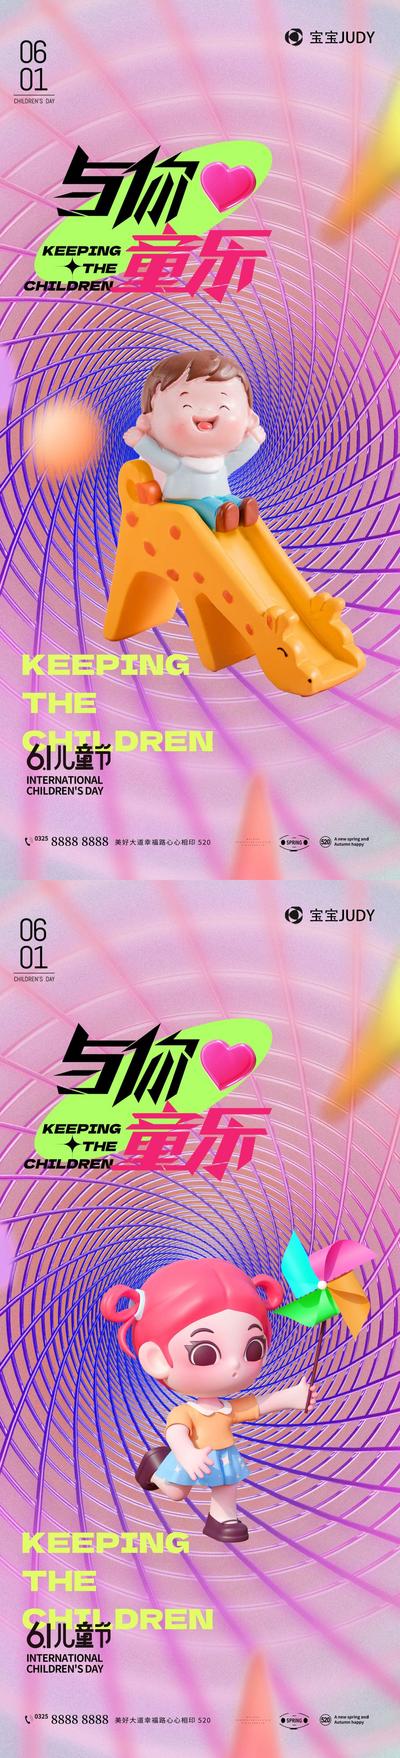 南门网 地产 节日 孩子 6.1 儿童节 刷屏 清新 时尚 梦想 炫彩 欢乐 童趣